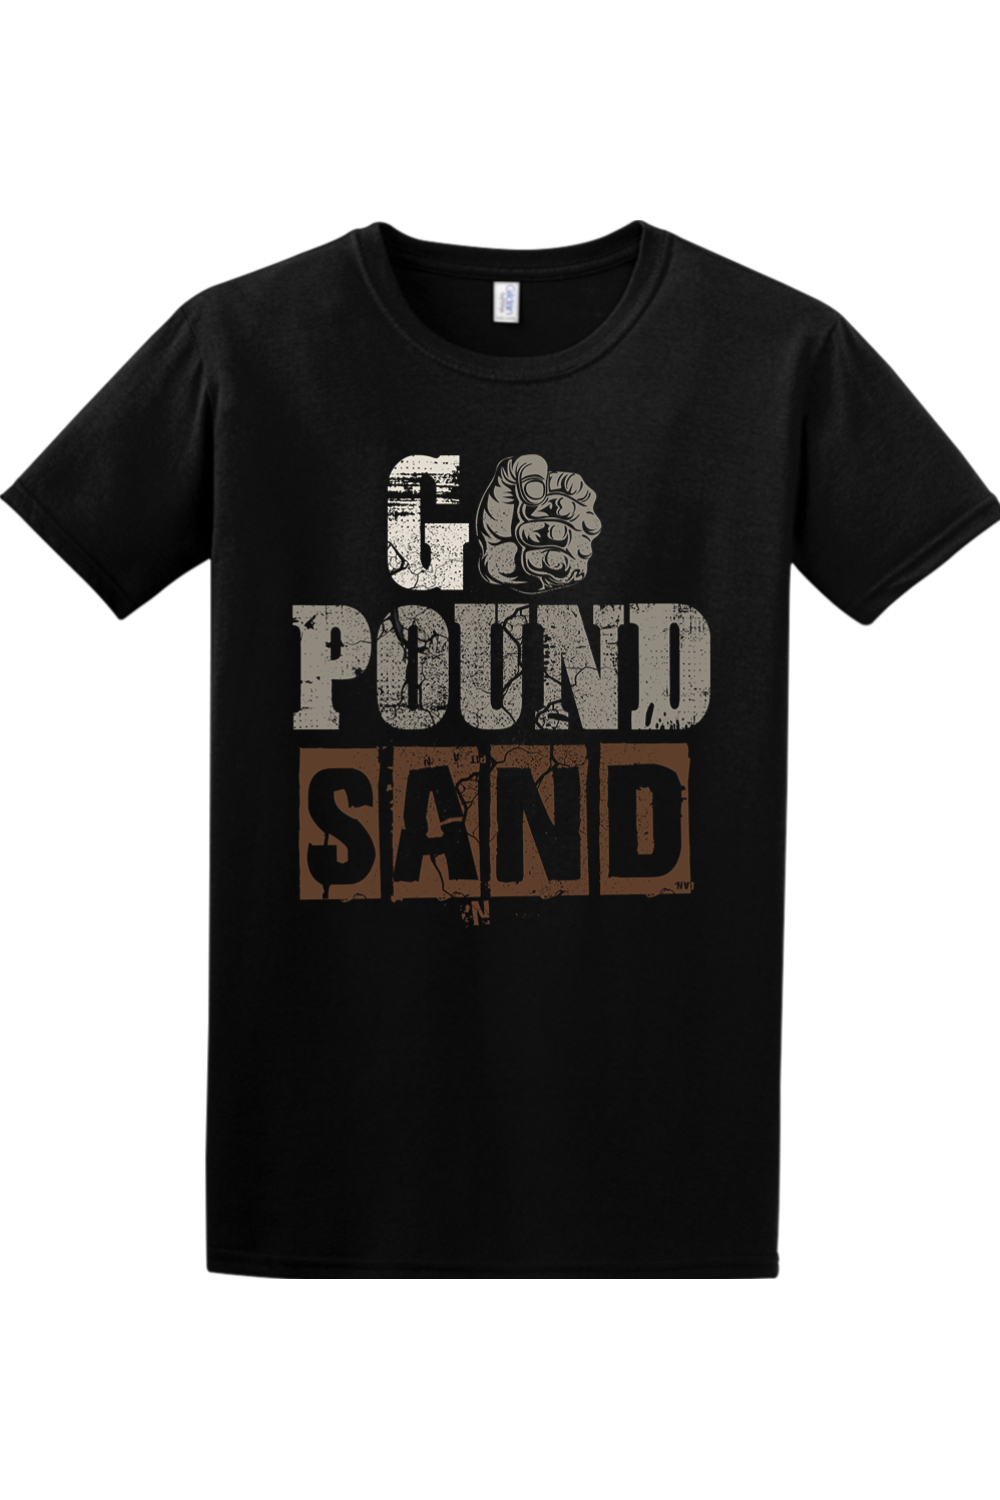 OG3 Go Pound Sand